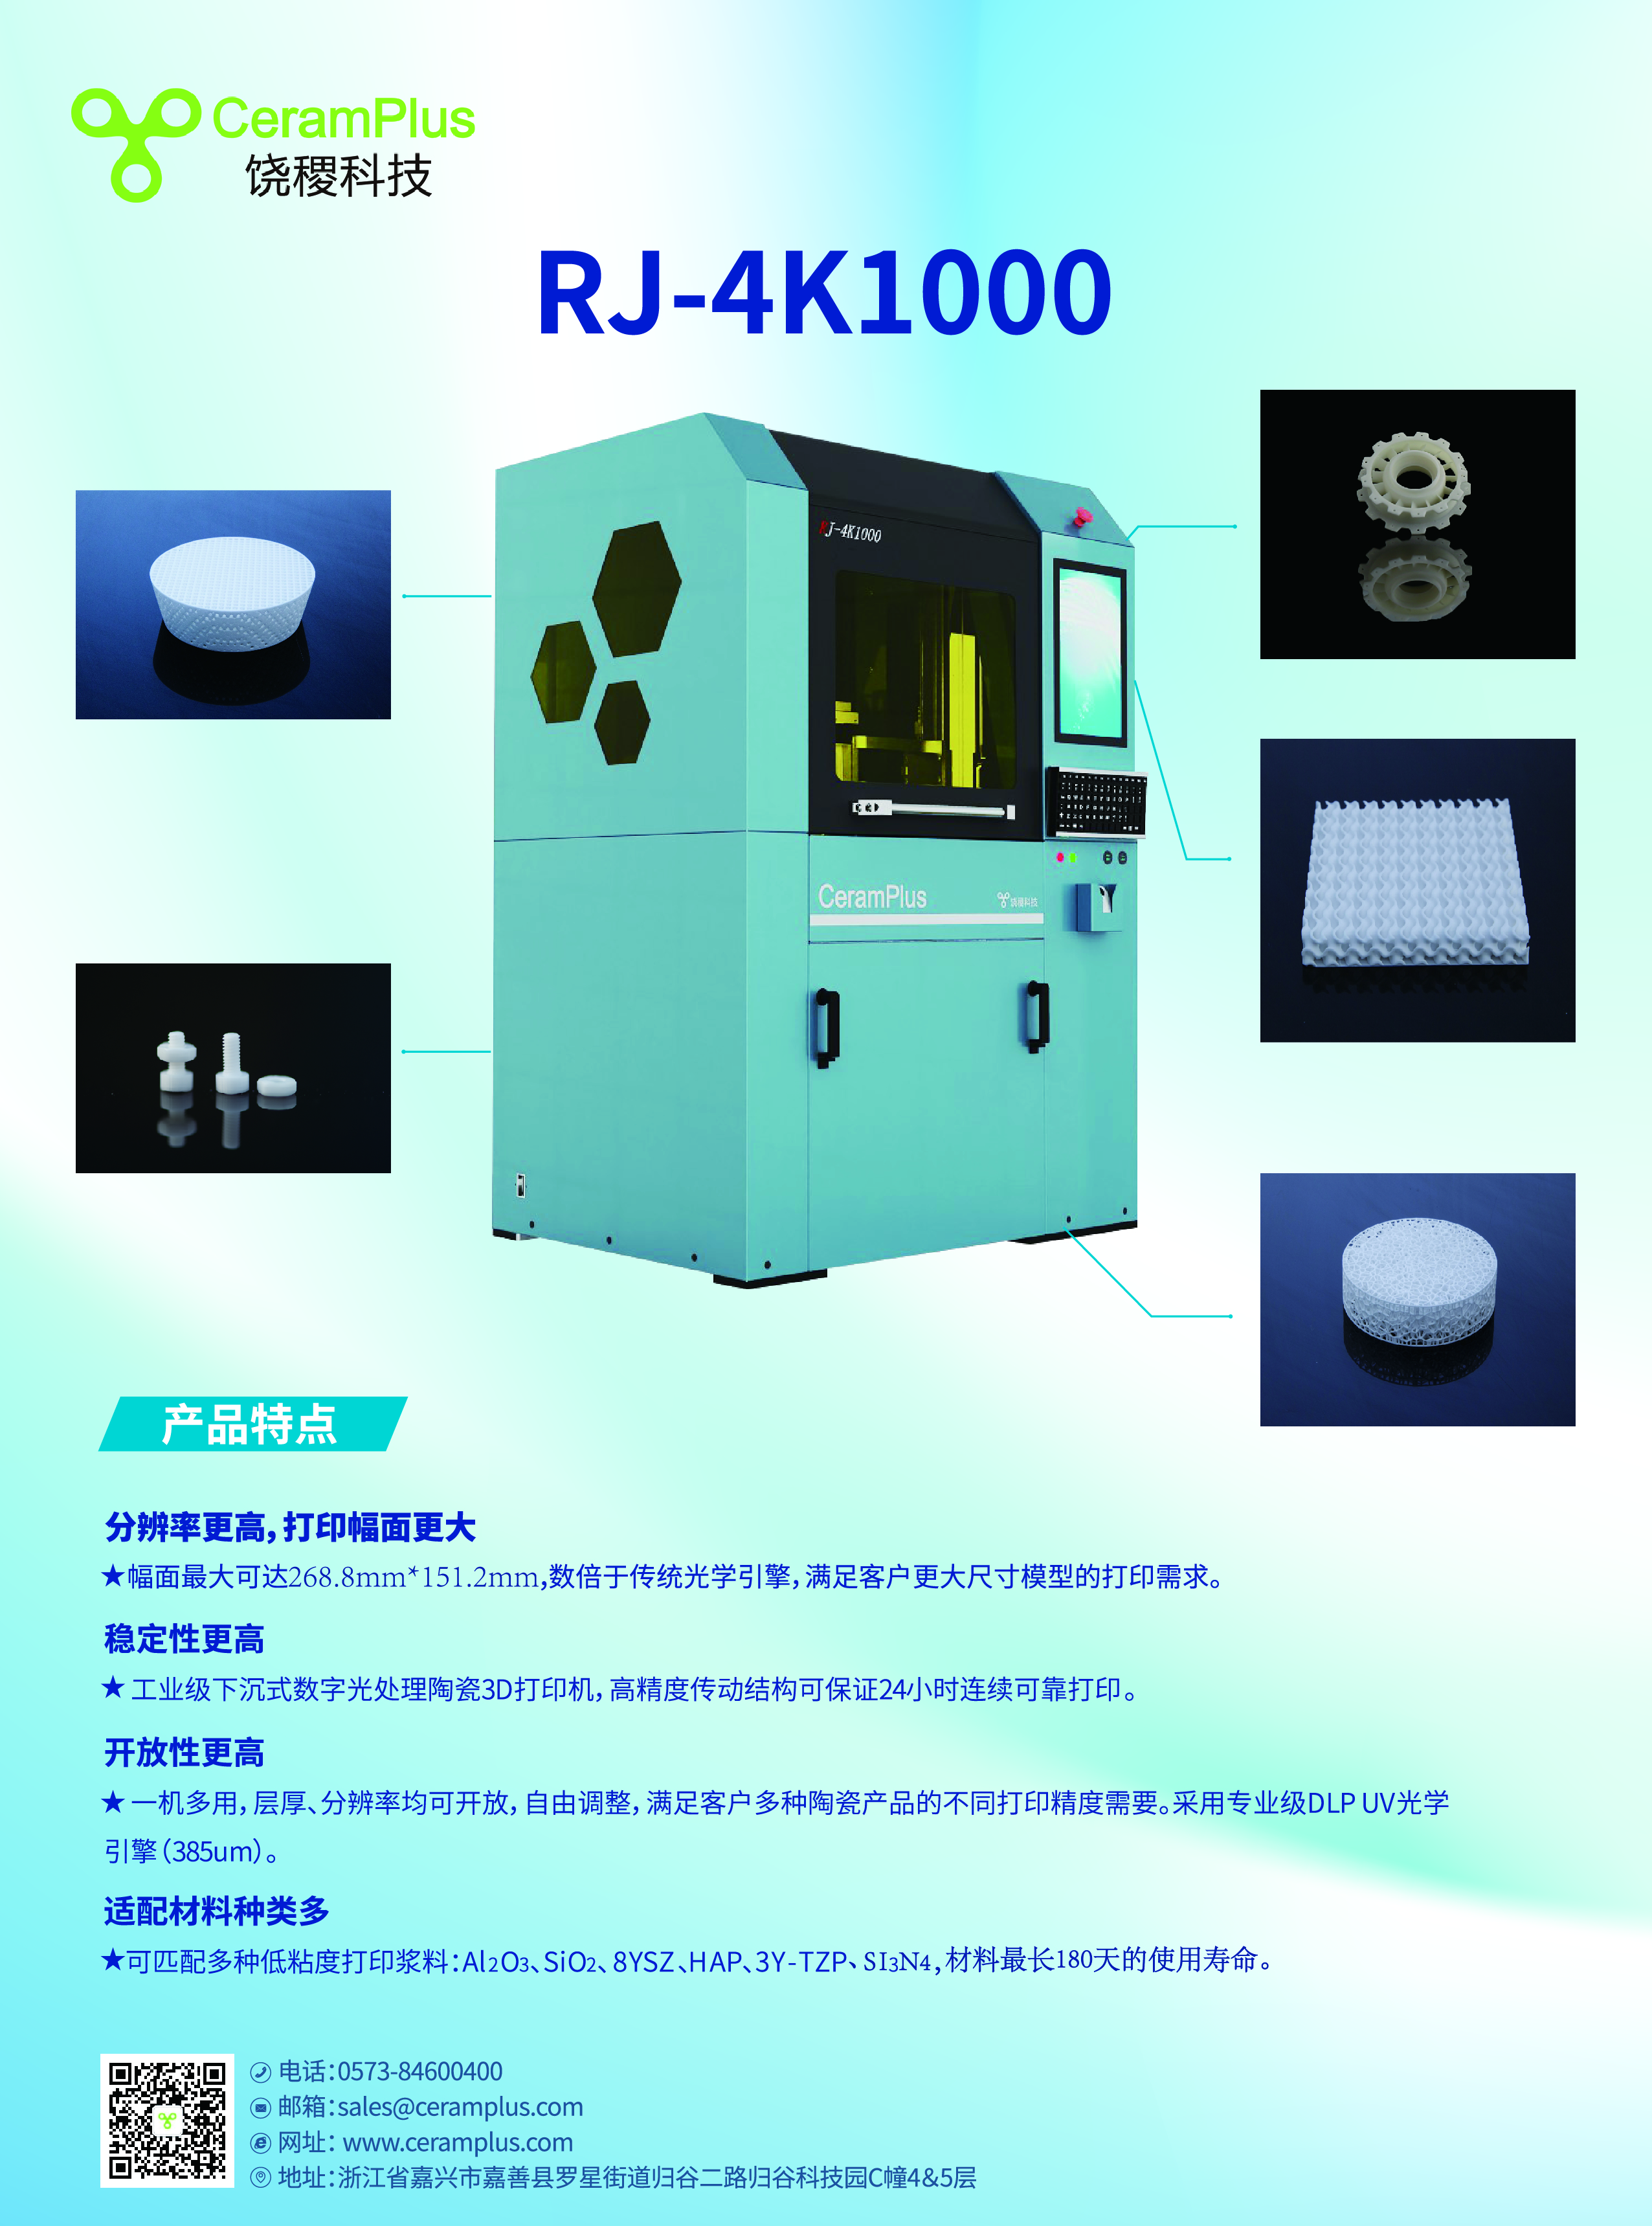 RJ-4k10000下沉式DLP陶瓷打印机